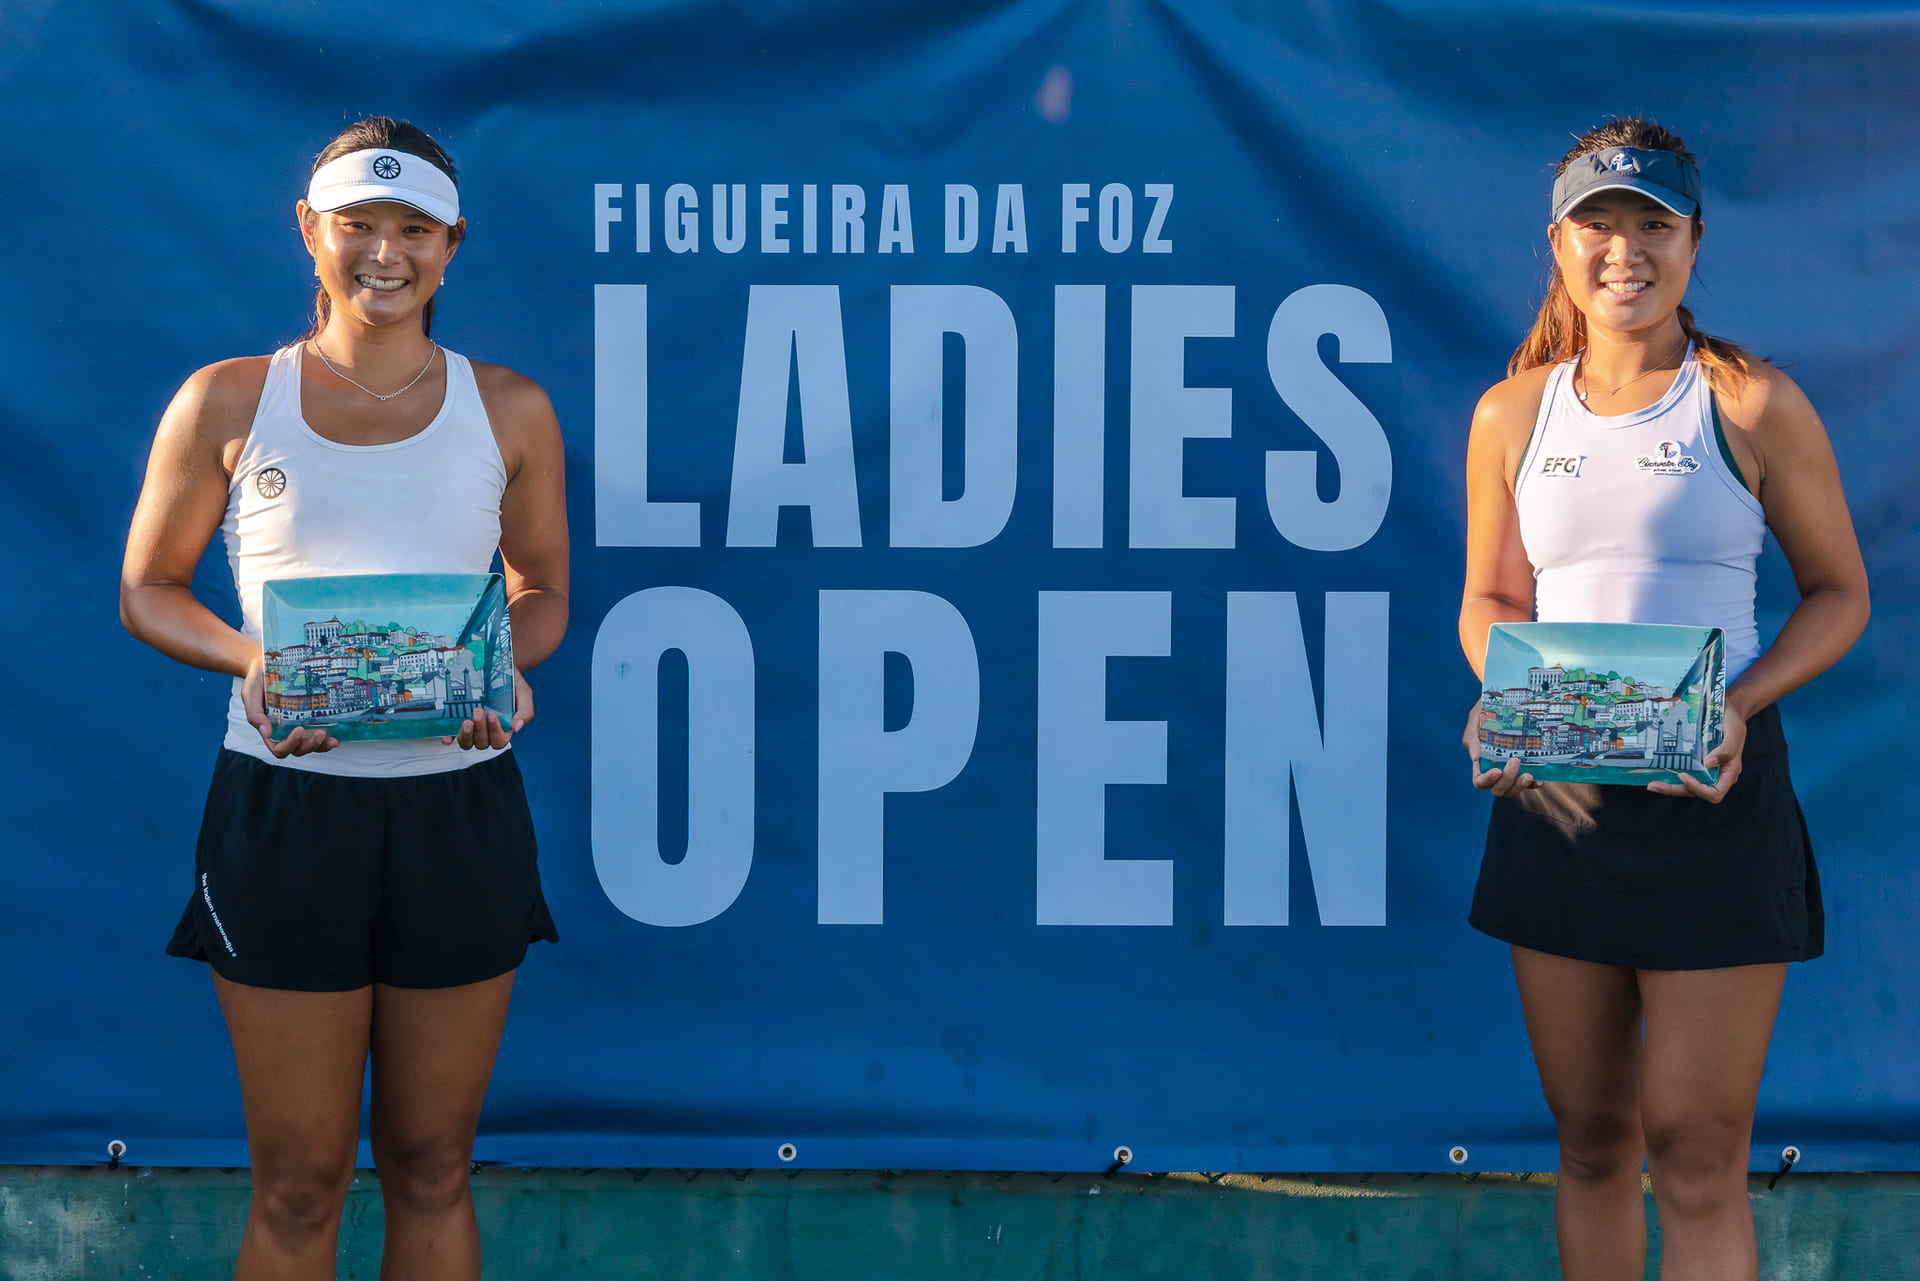 The Campus Carby VW Ladies Open será torneio feminino mais importante de  sempre no Algarve